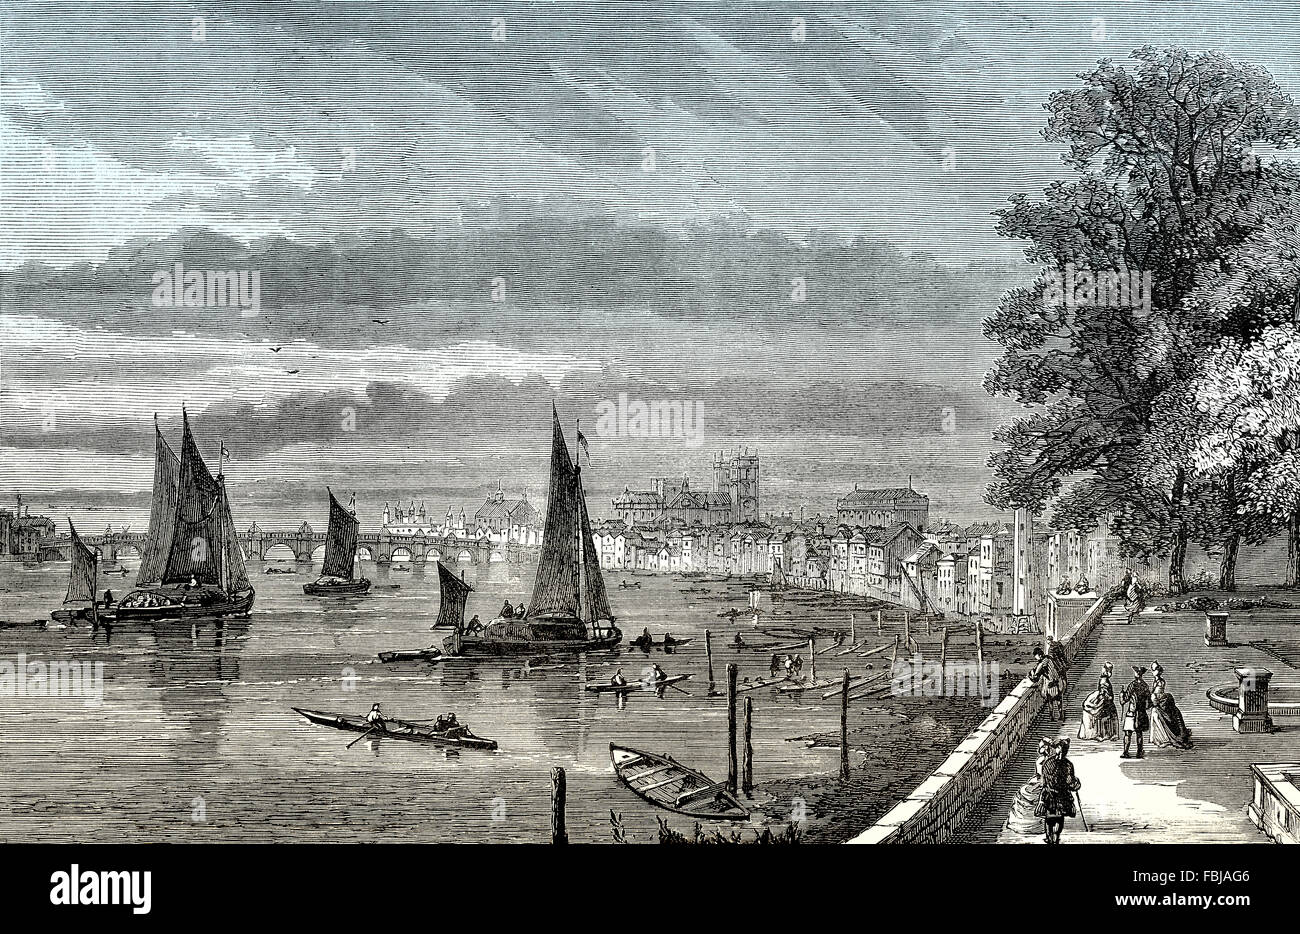 La vue depuis la terrasse donnant sur la rivière de Somerset House à Westminster, Londres, Angleterre, 18e siècle Banque D'Images